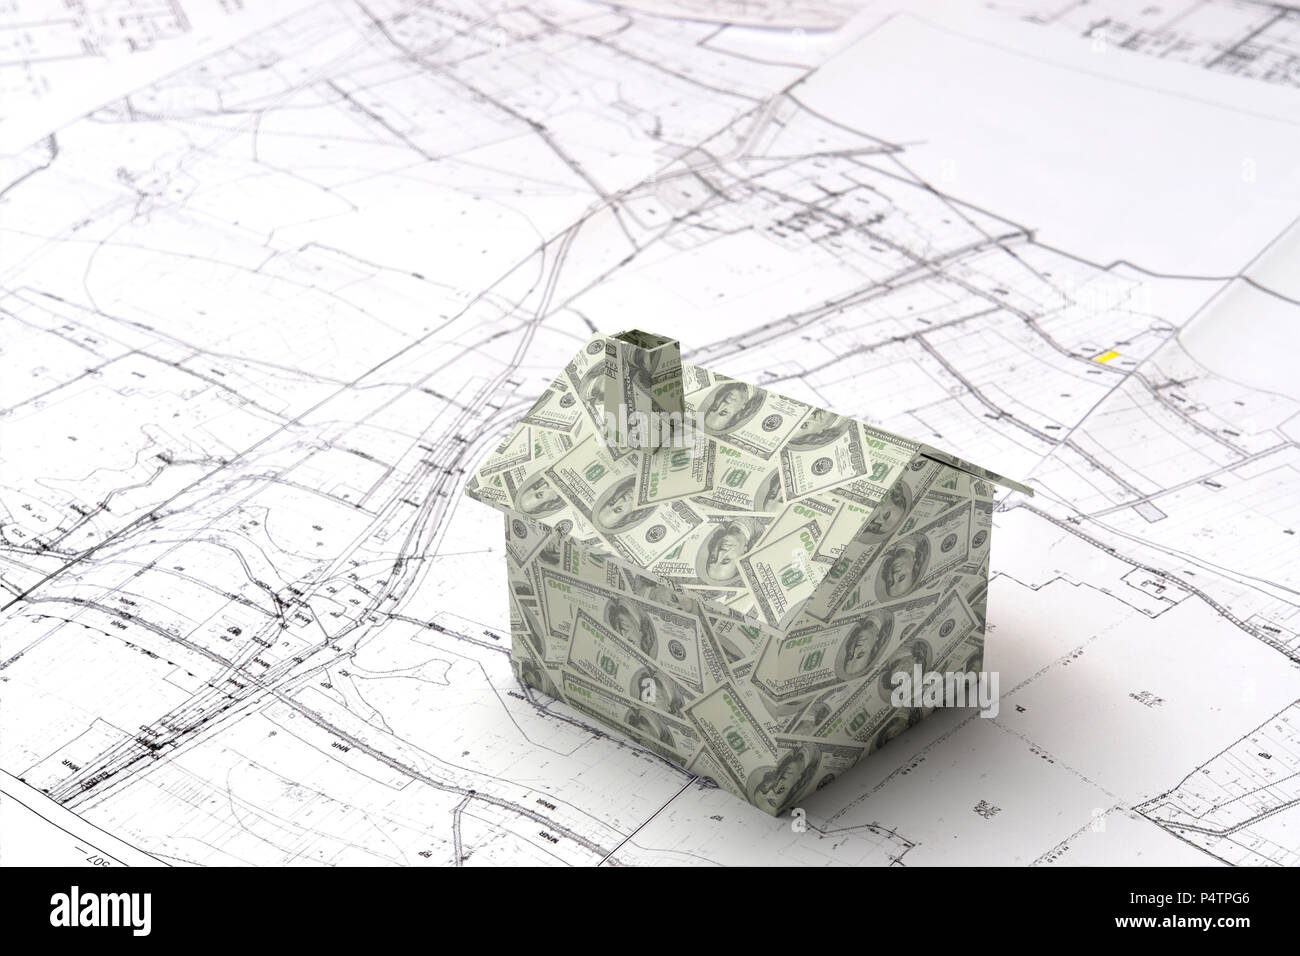 Peu de modèle 3D maison en carton enroulé autour avec des dollars américains sur le plan de bâtiment Banque D'Images